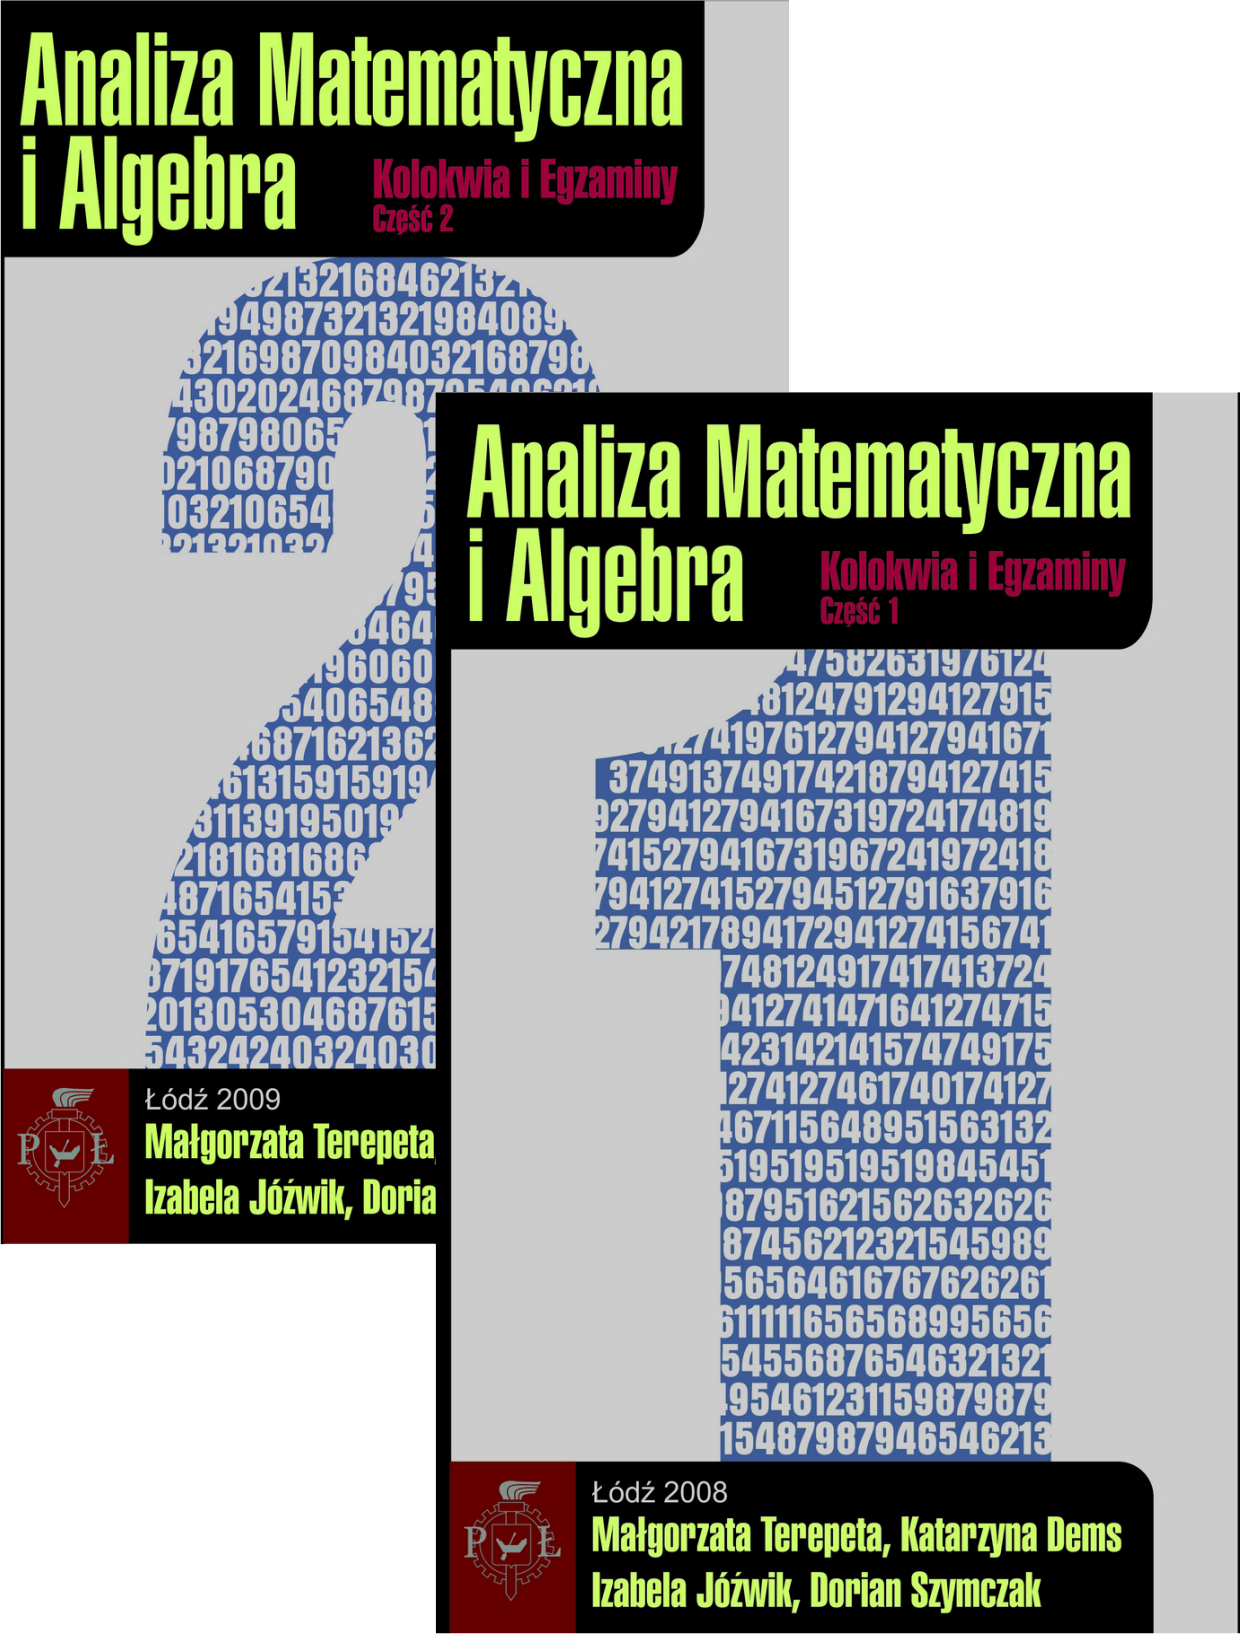 ZESTAW: Analiza matematyczna i algebra. Kolokwia i egzaminy część I (2009) i część II (2009)